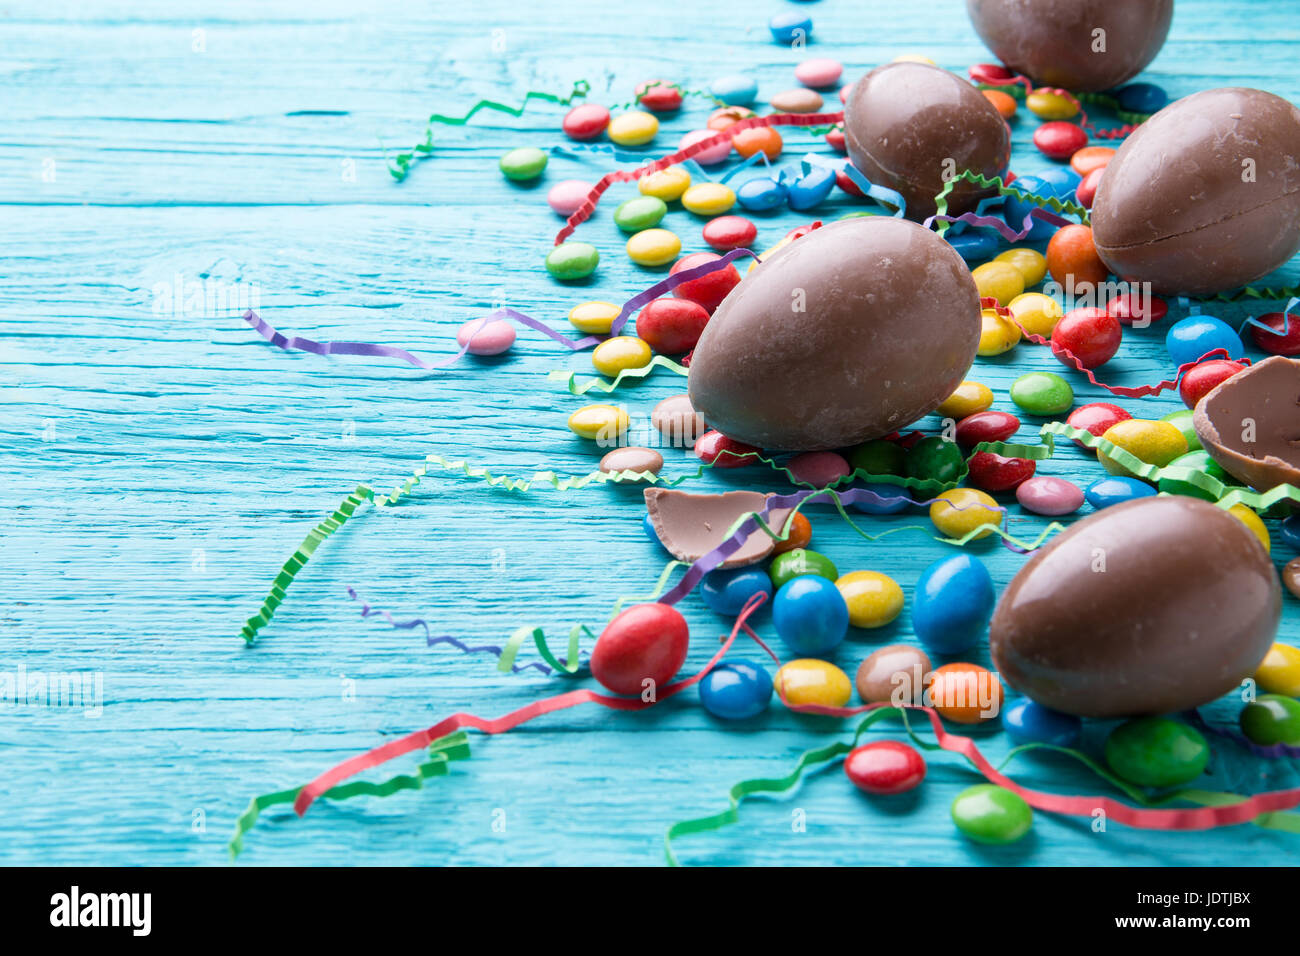 Huevos de chocolate, gominolas, cintas de colores sobre la mesa de madera azul Foto de stock